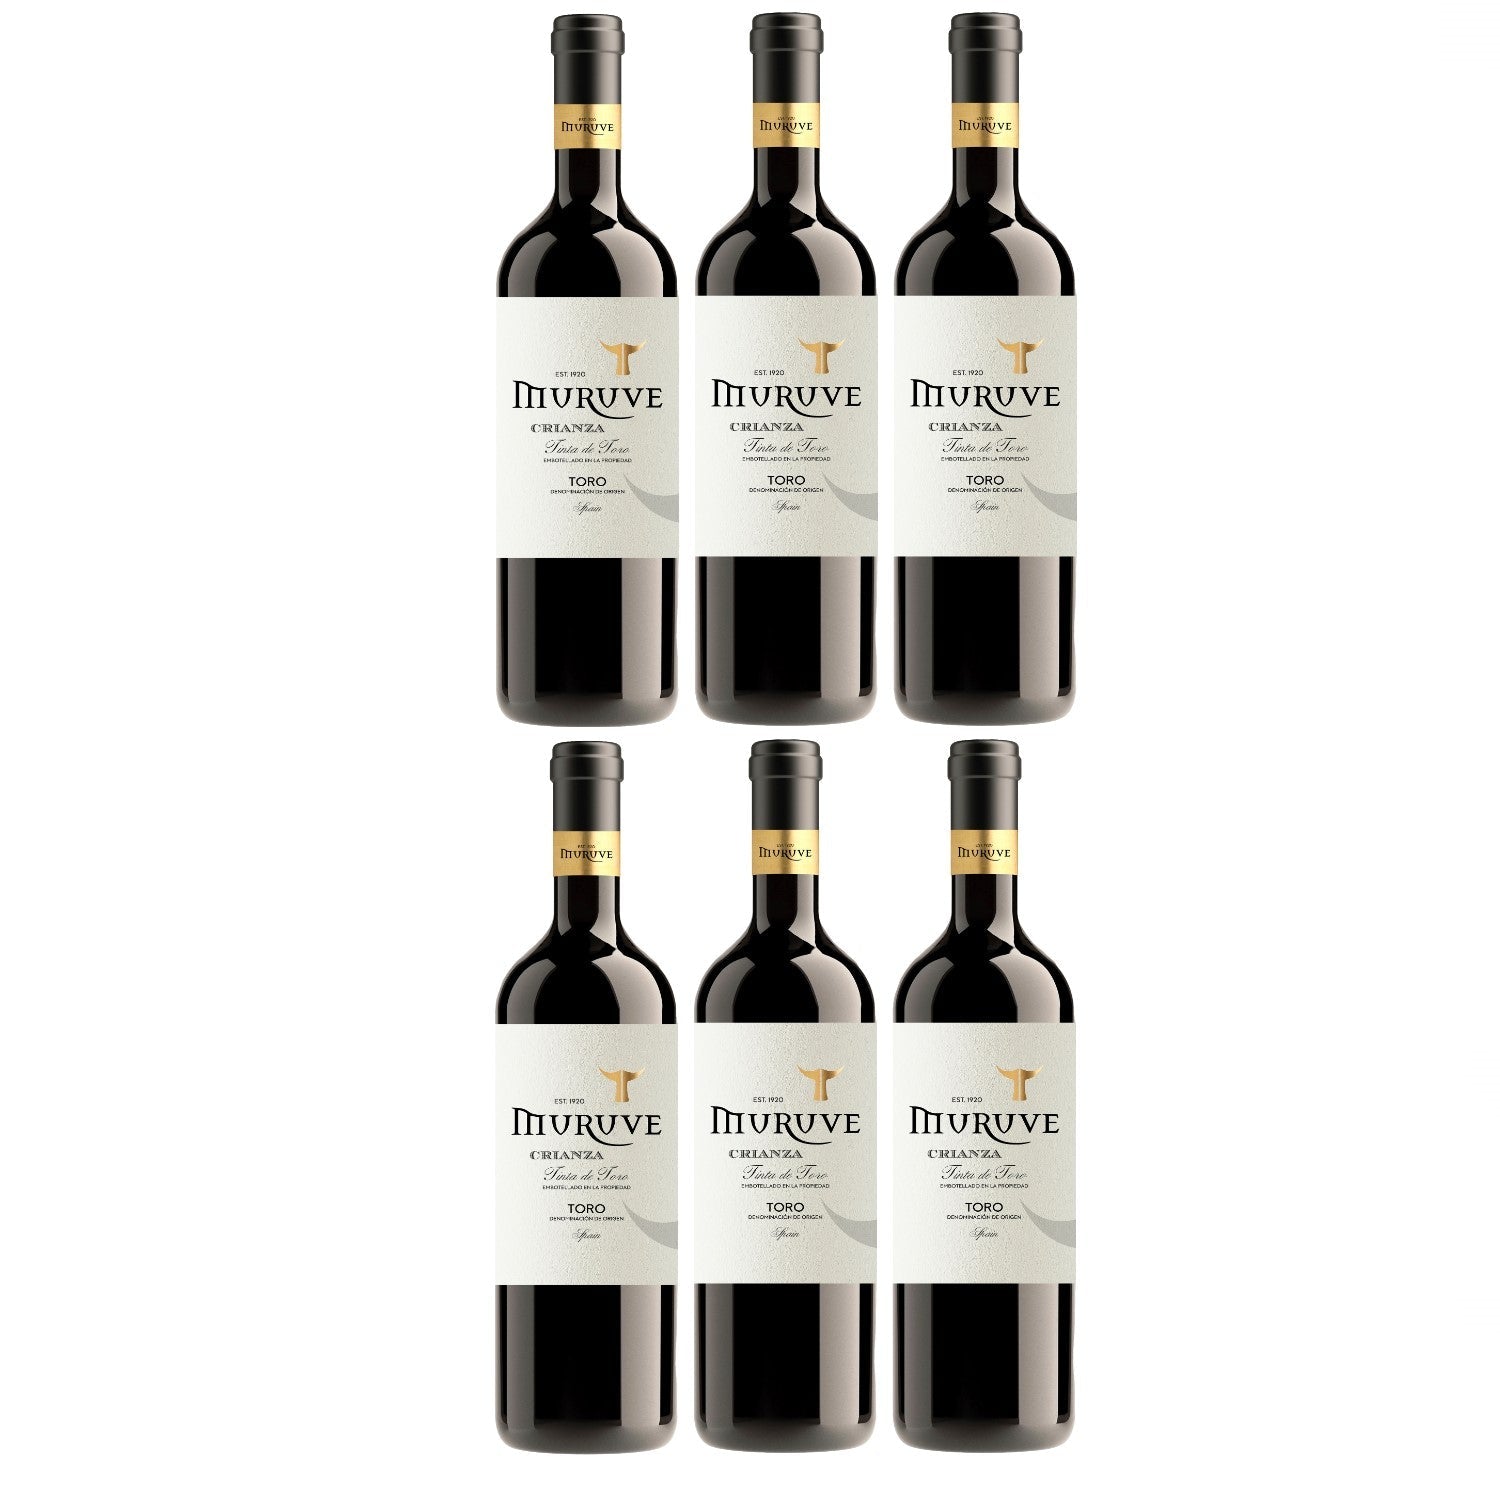 Bodegas Frutos Villar Muruve Crianza Toro DO Rotwein Wein trocken Spanien (6 x 0.75l) - Versanel -